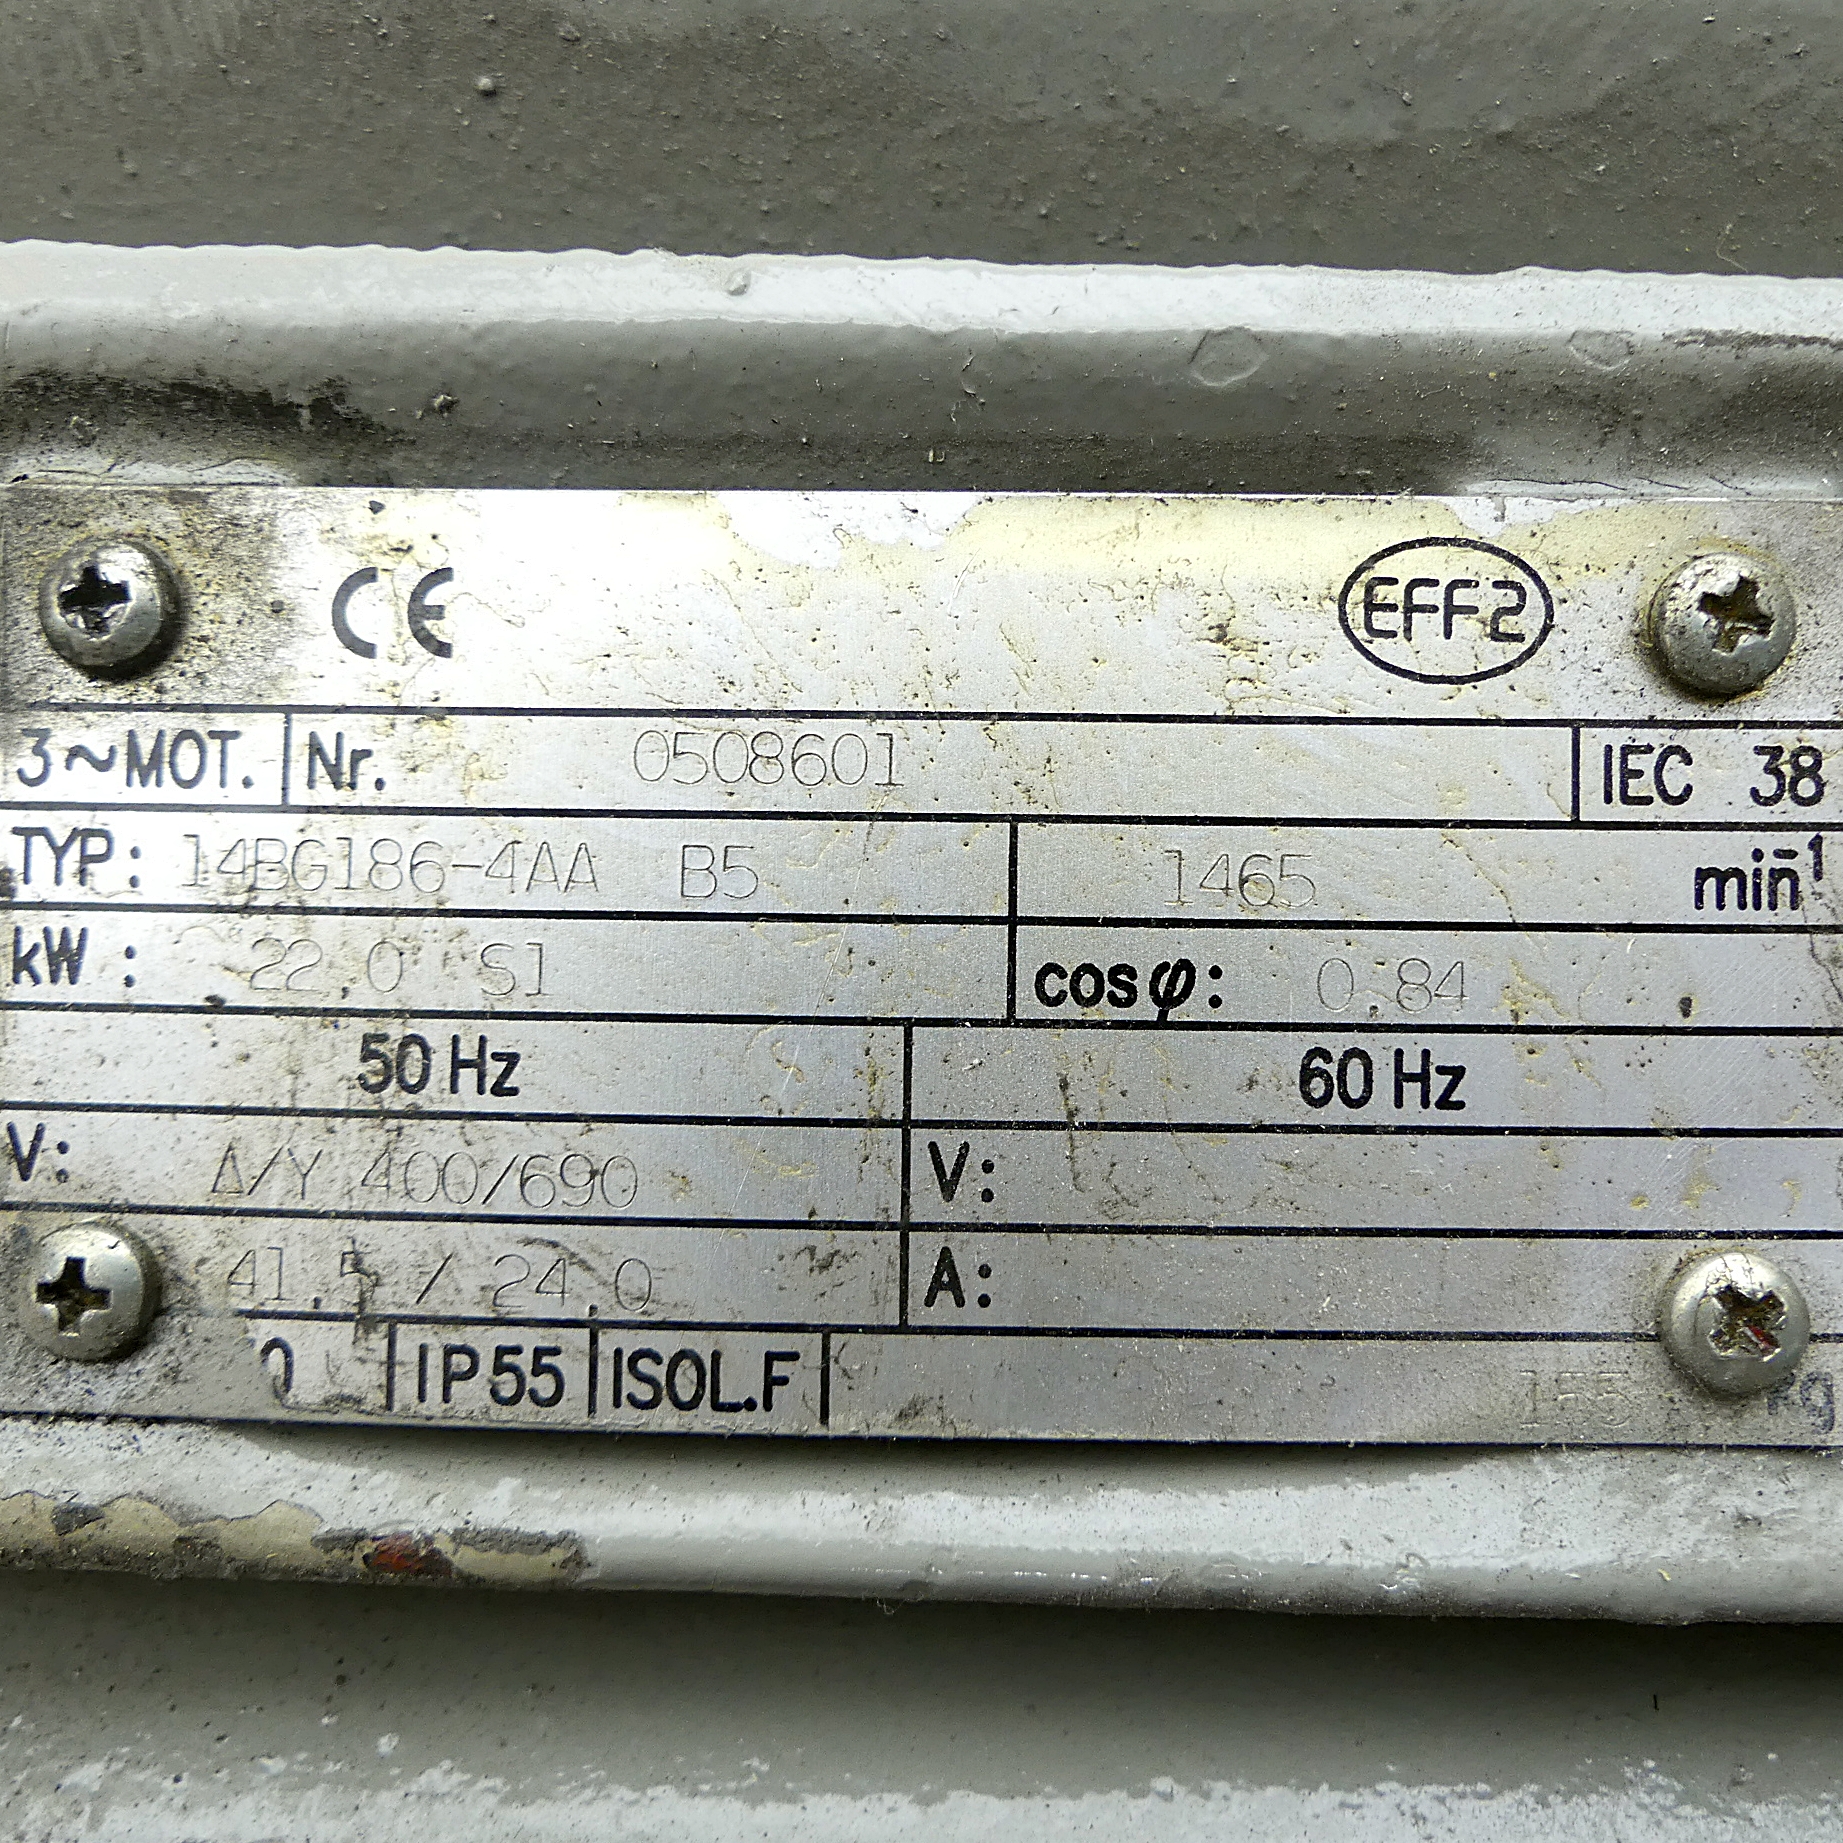 Electric motor 14BG186-4AA 